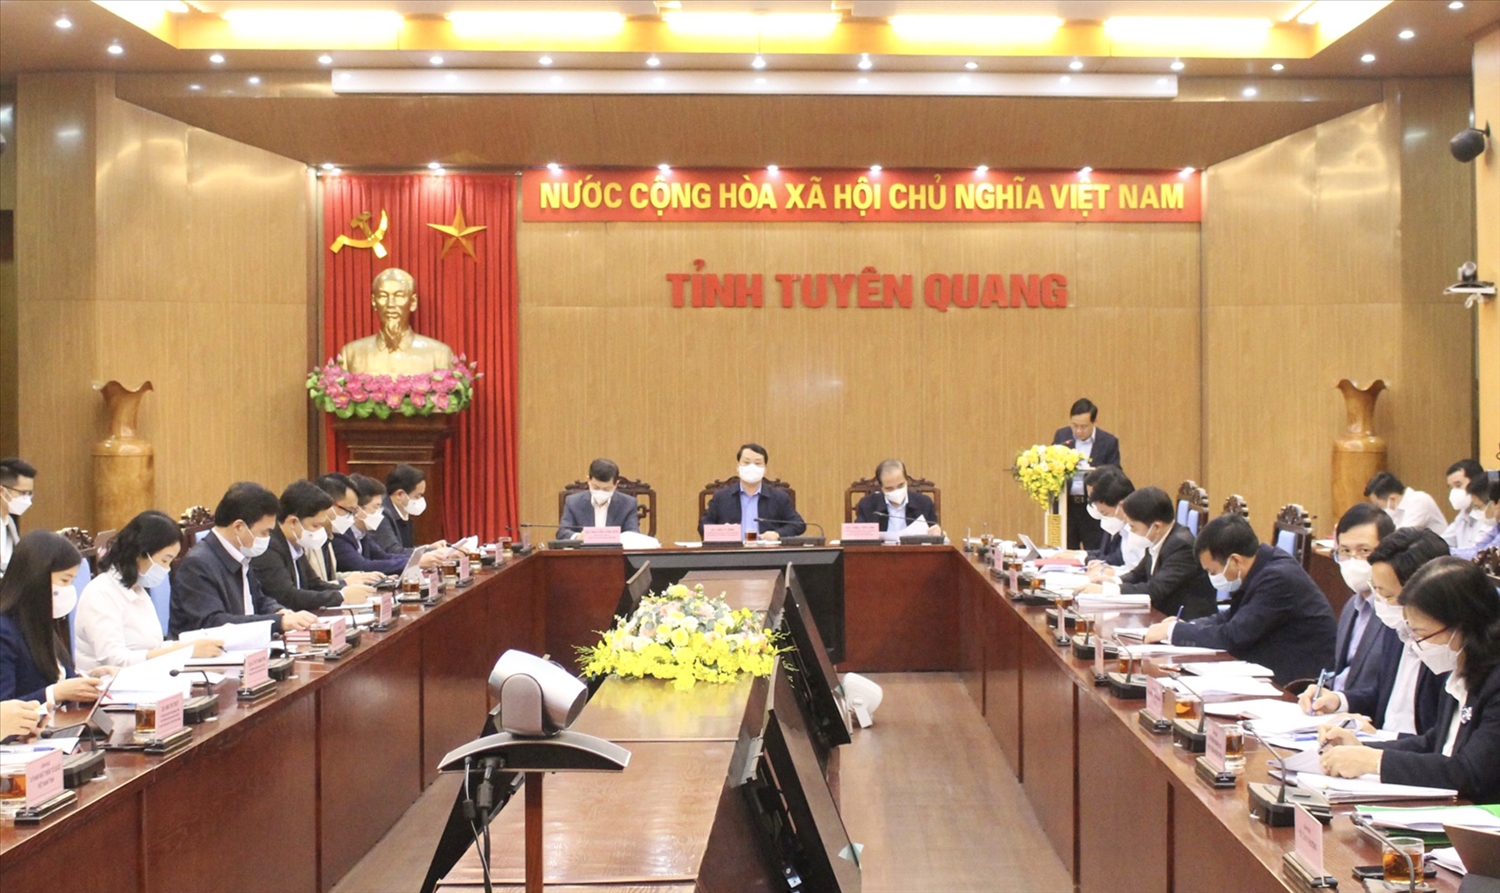 Toàn cảnh buổi làm việc của Bộ trưởng, Chủ nhiệm UBDT Hầu A Lềnh với Tỉnh ủy, UBND tỉnh Tuyên Quang 